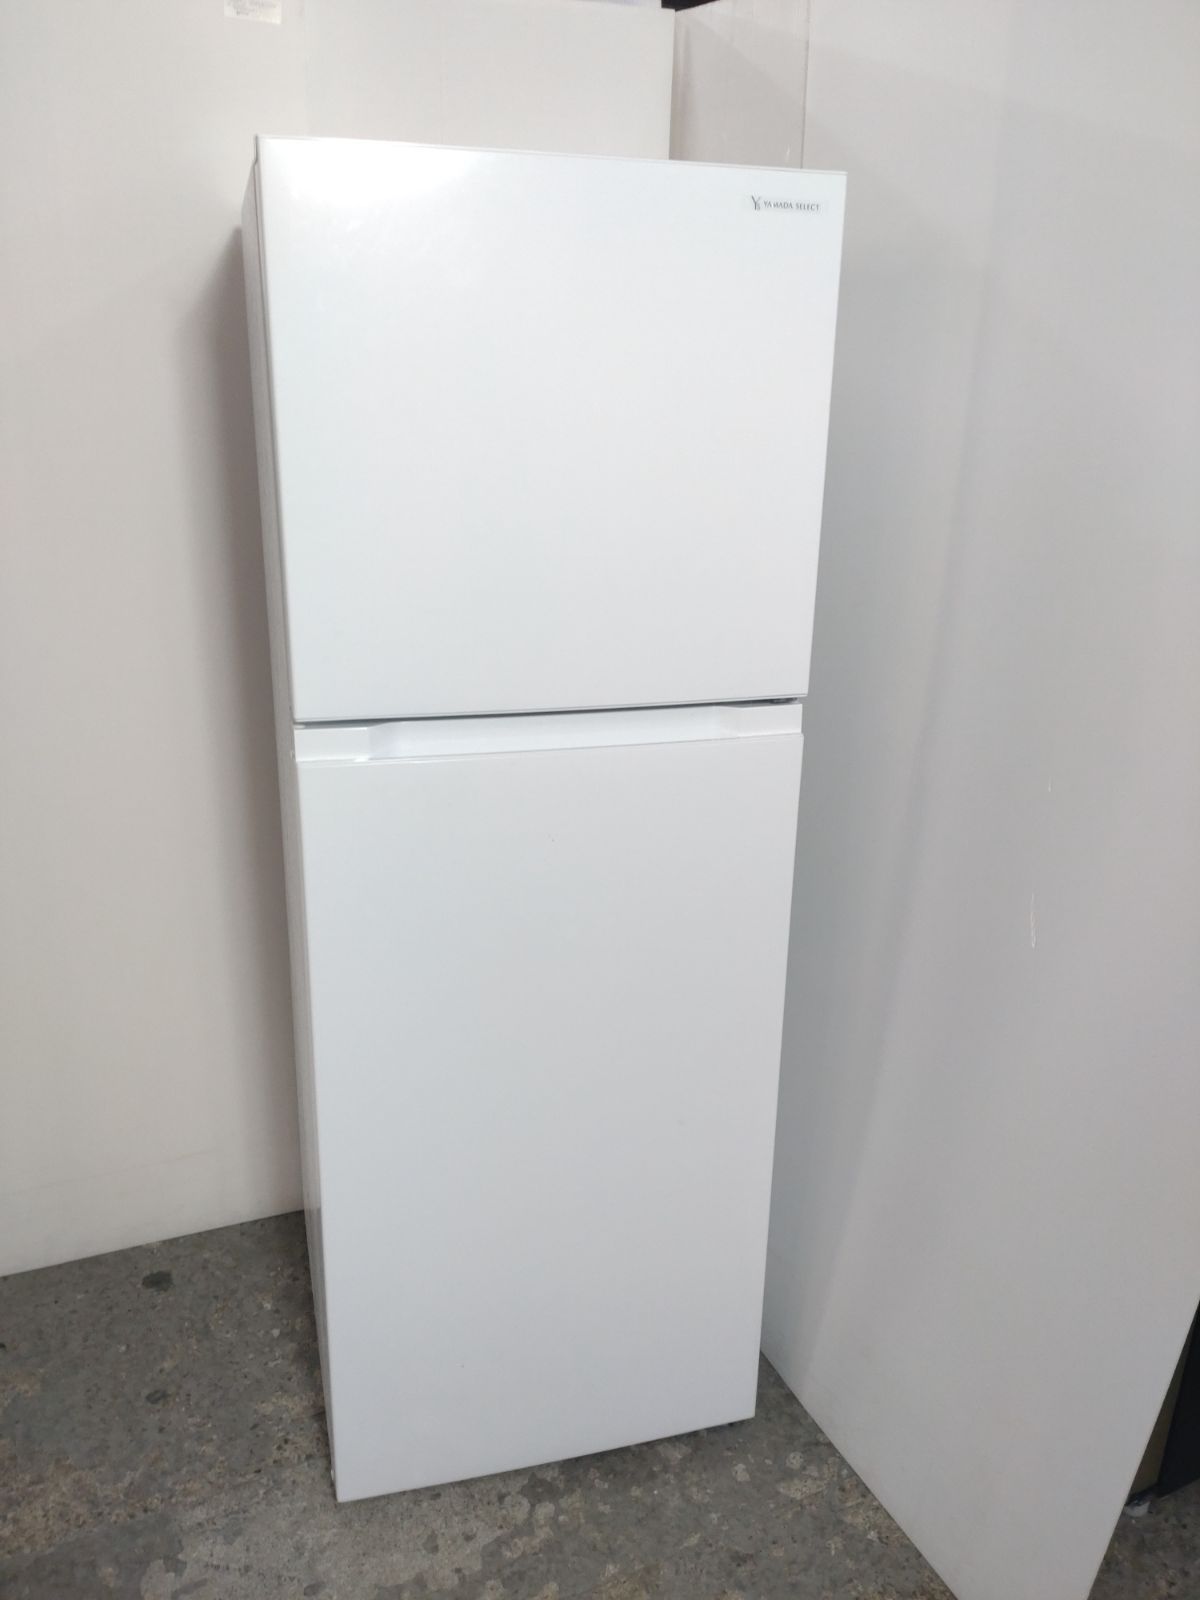 ワールプールジャパン 冷蔵庫 YRZ-F23H1 236L 2020年製 家電 - 生活家電